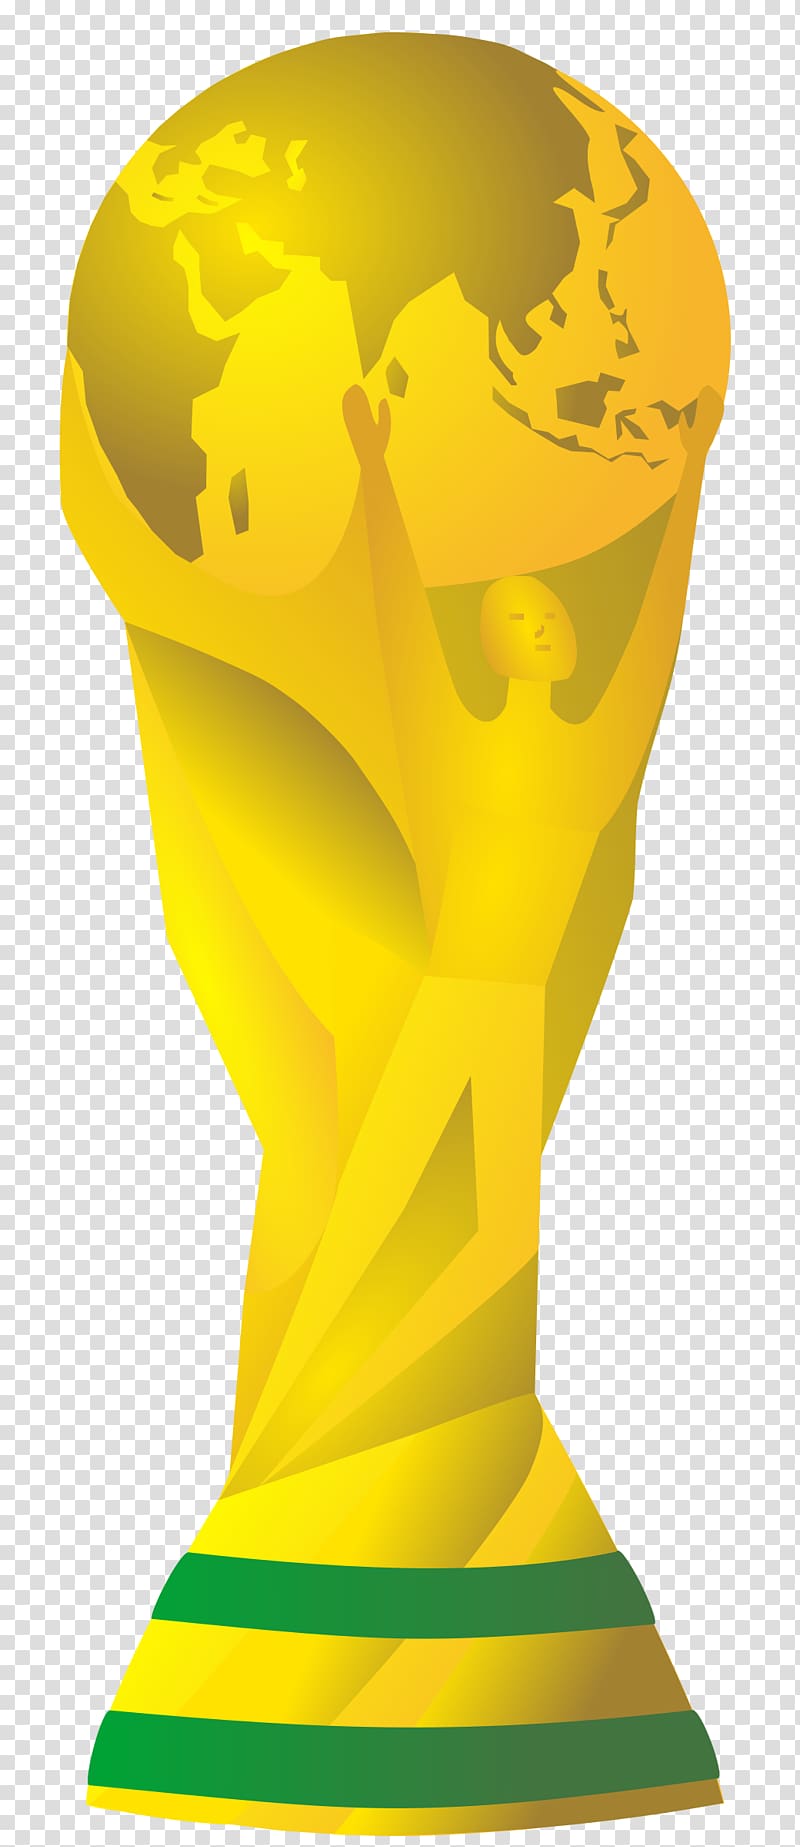 Soccer trophy 2014.